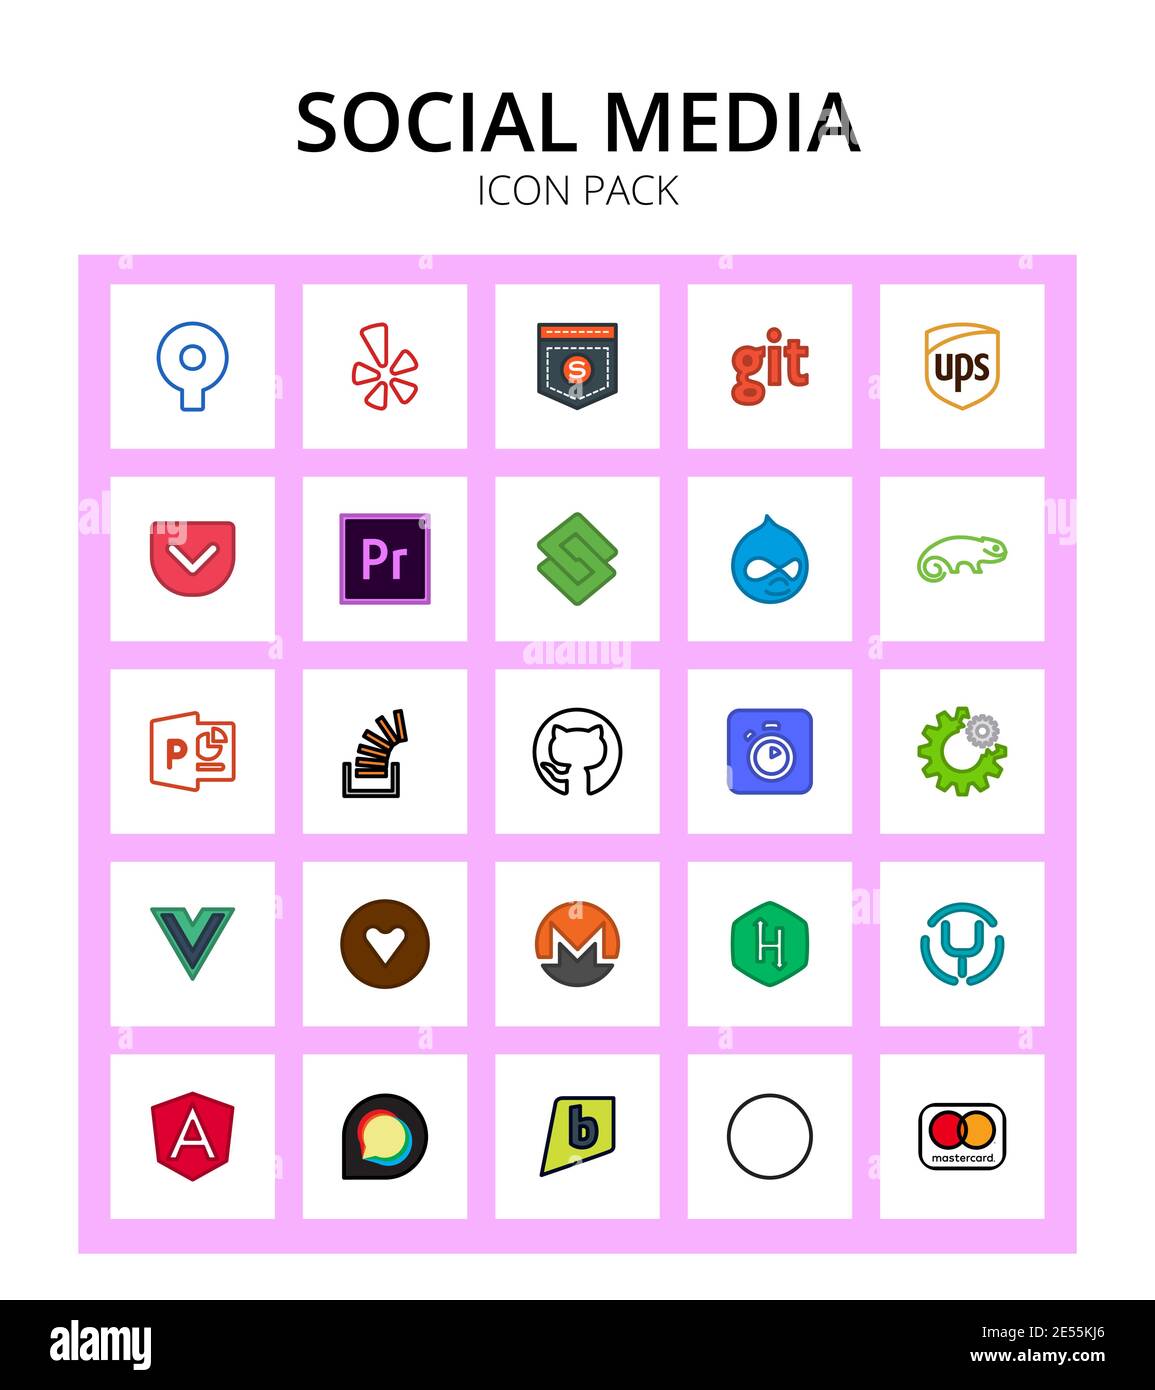 Socialmedia vuejs, algolia, staylinked, Github, Stack editierbare Vektor-Design-Elemente Stock Vektor